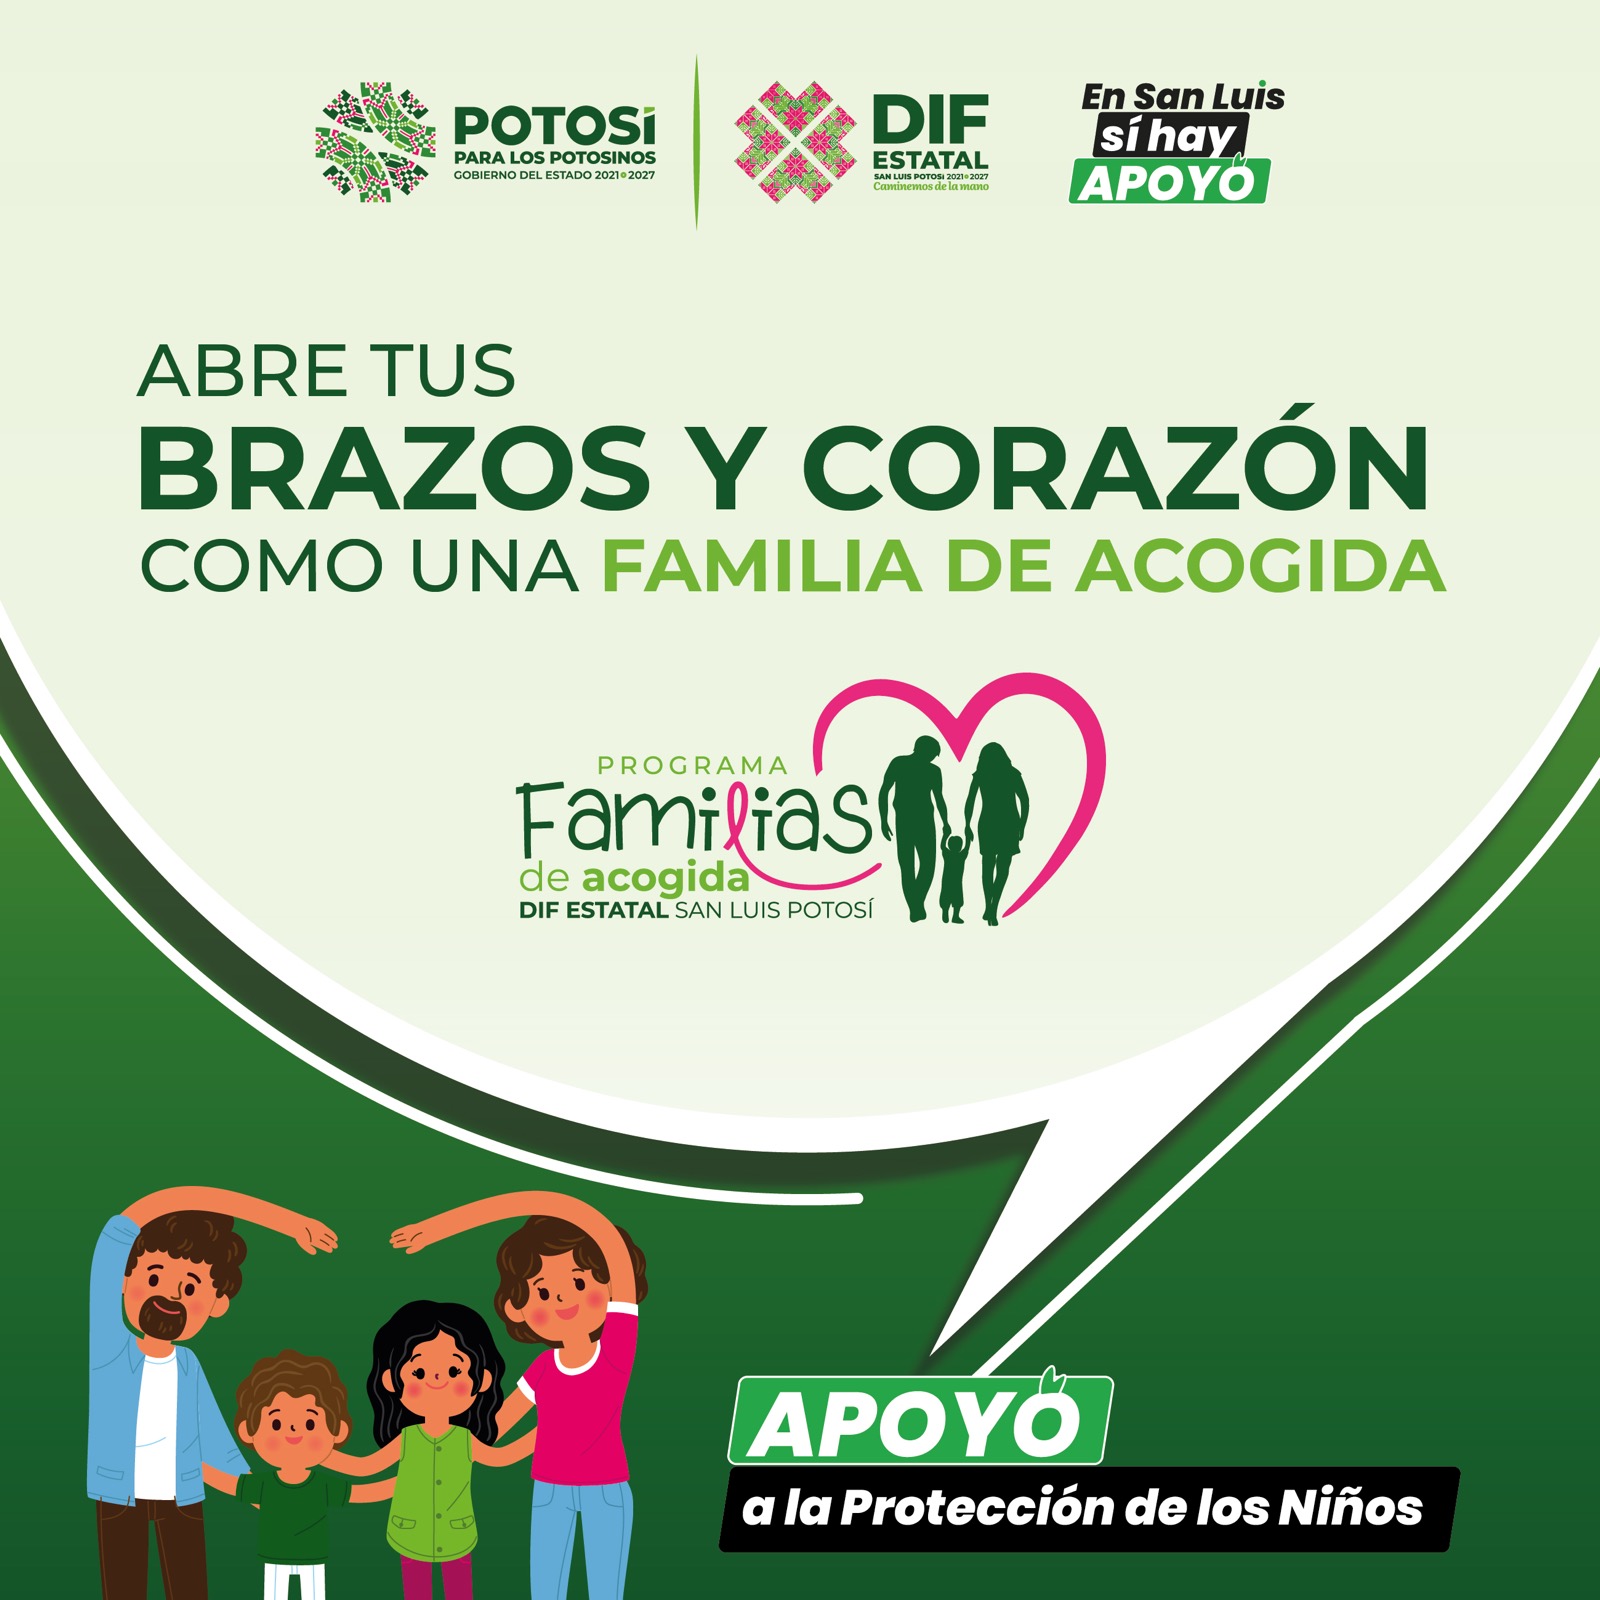 González Silva dijo que “con este programa, buscamos un entorno seguro y amoroso para la infancia potosina bajo tutela del Estado"